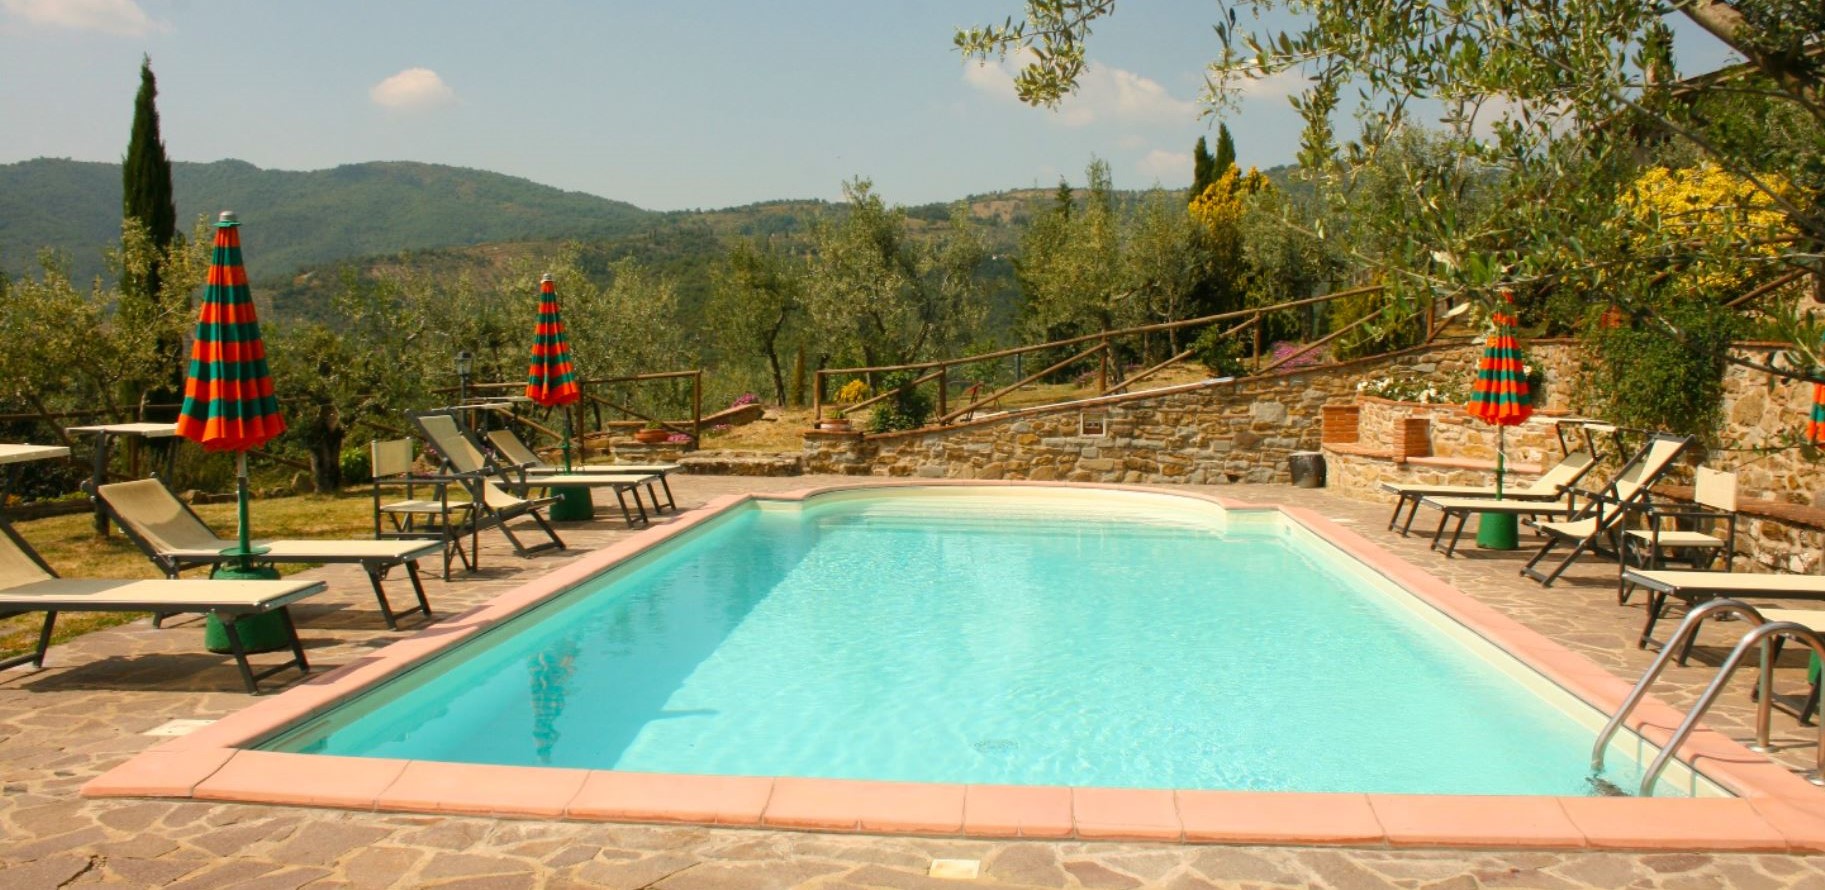 196_Casa Montanina vakantiehuis met prive zwembad Toscane Arezzo kleinschalige agriturimso